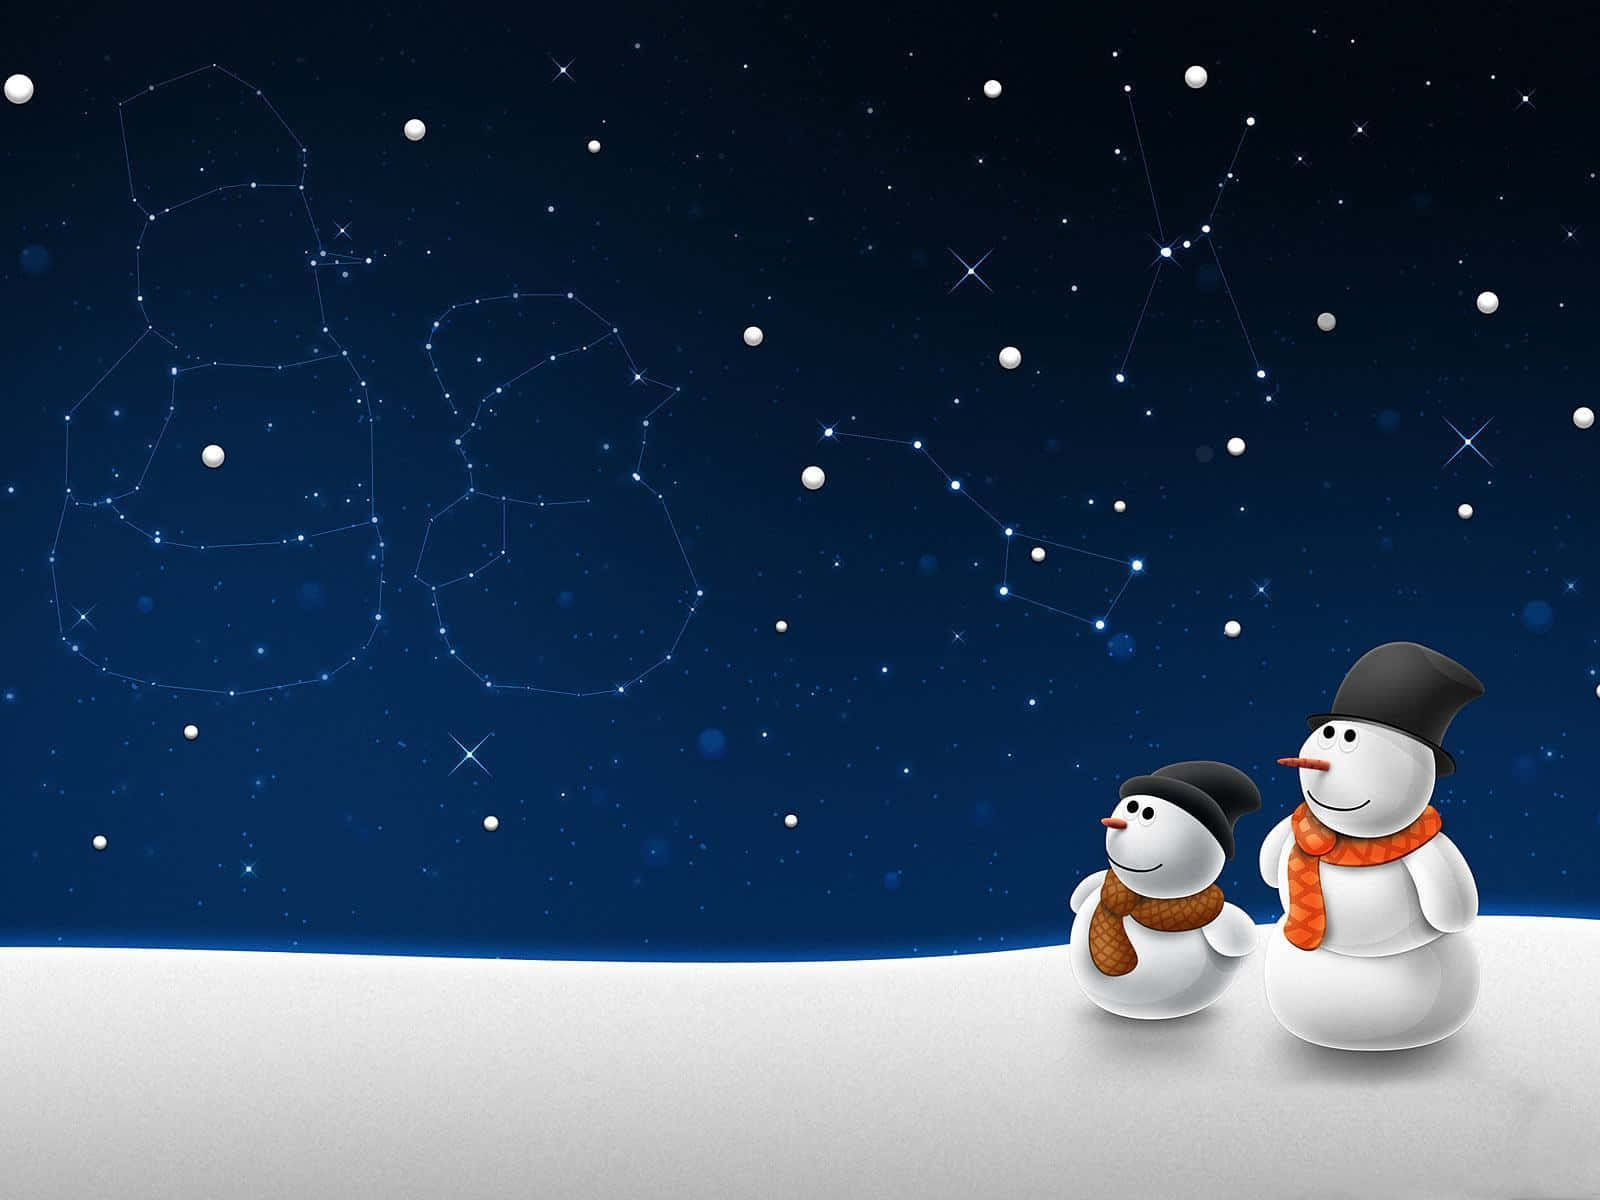 Obrade Arte Para El Escritorio En Las Vacaciones De Invierno Con Dos Muñecos De Nieve. Fondo de pantalla